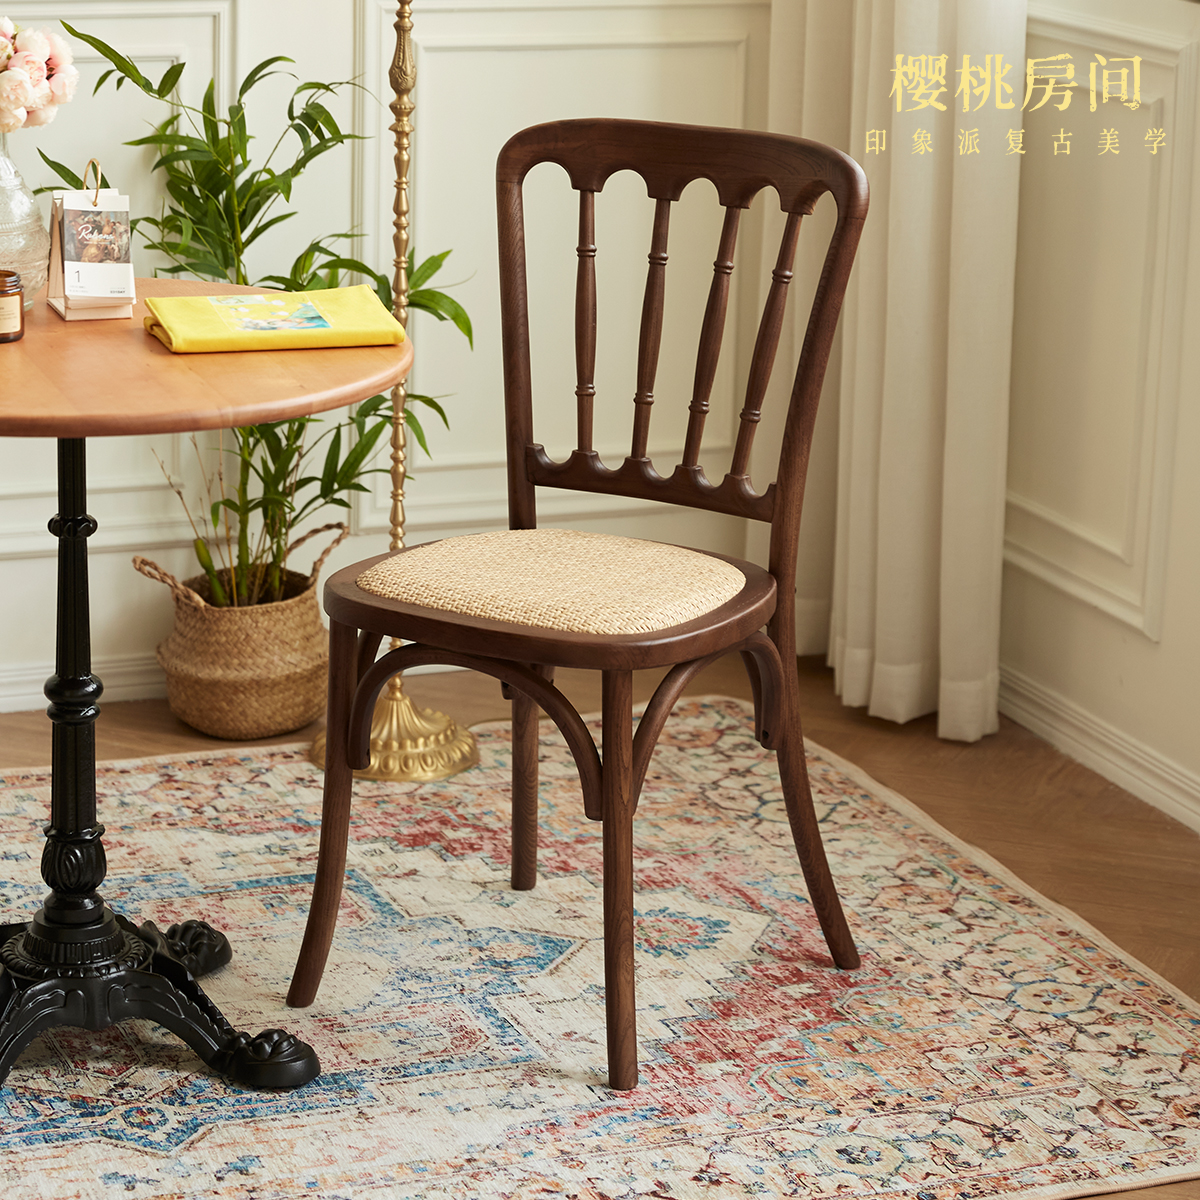 樱桃房间丨拿破仑实木餐椅高级餐厅椅子家用简约靠背椅凳子餐桌椅